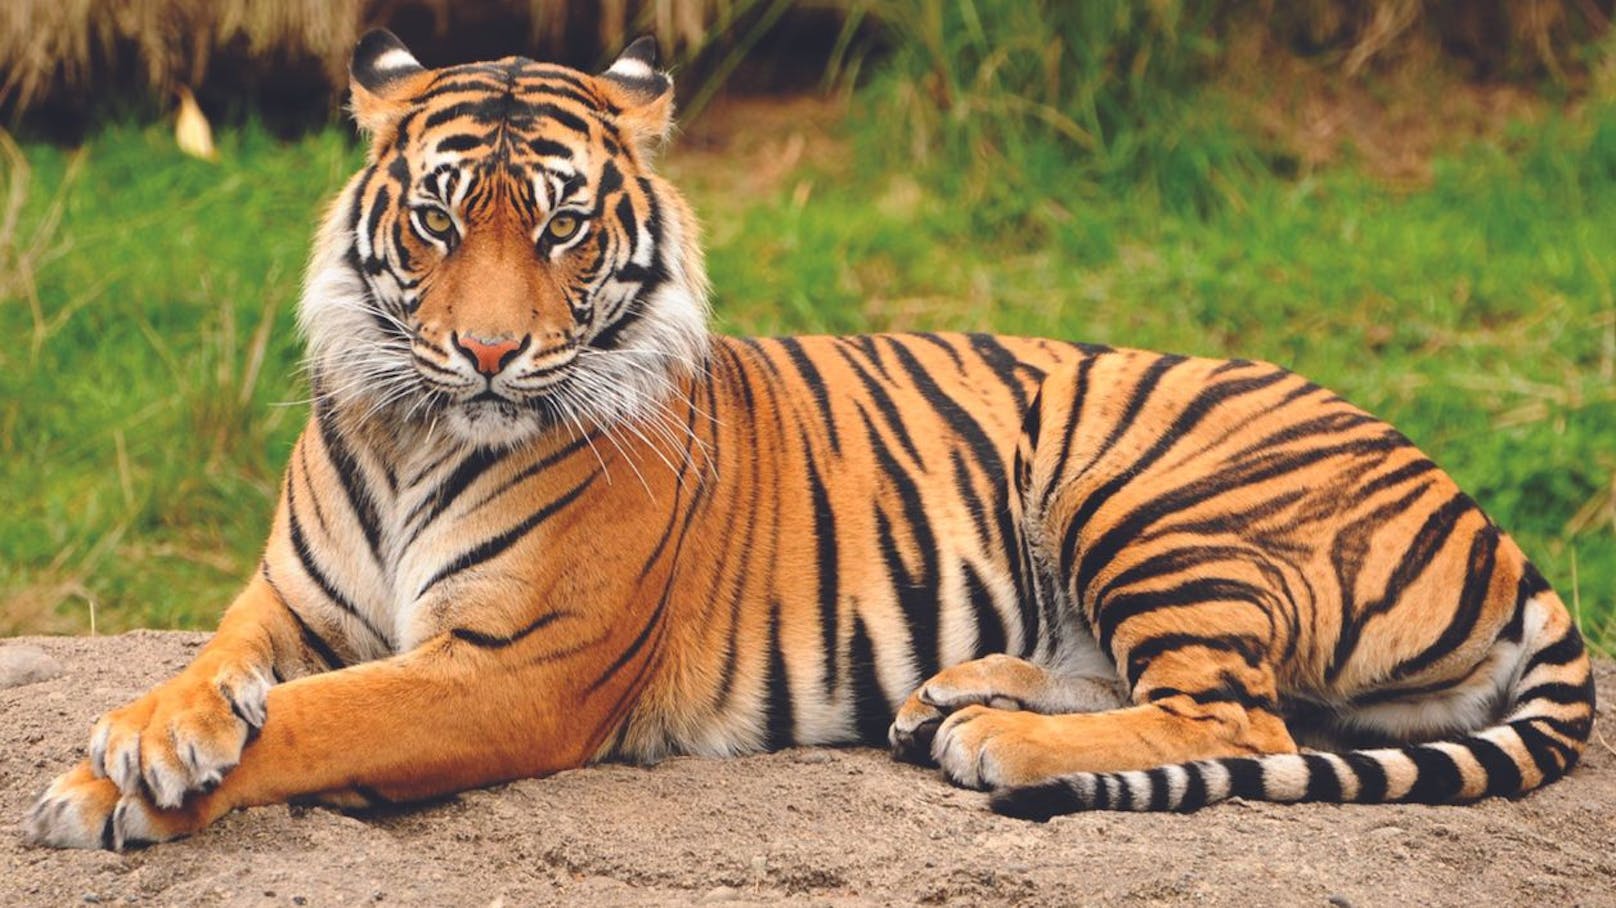 Zoo-Tiger hatte plötzlich einen Schuh im Maul